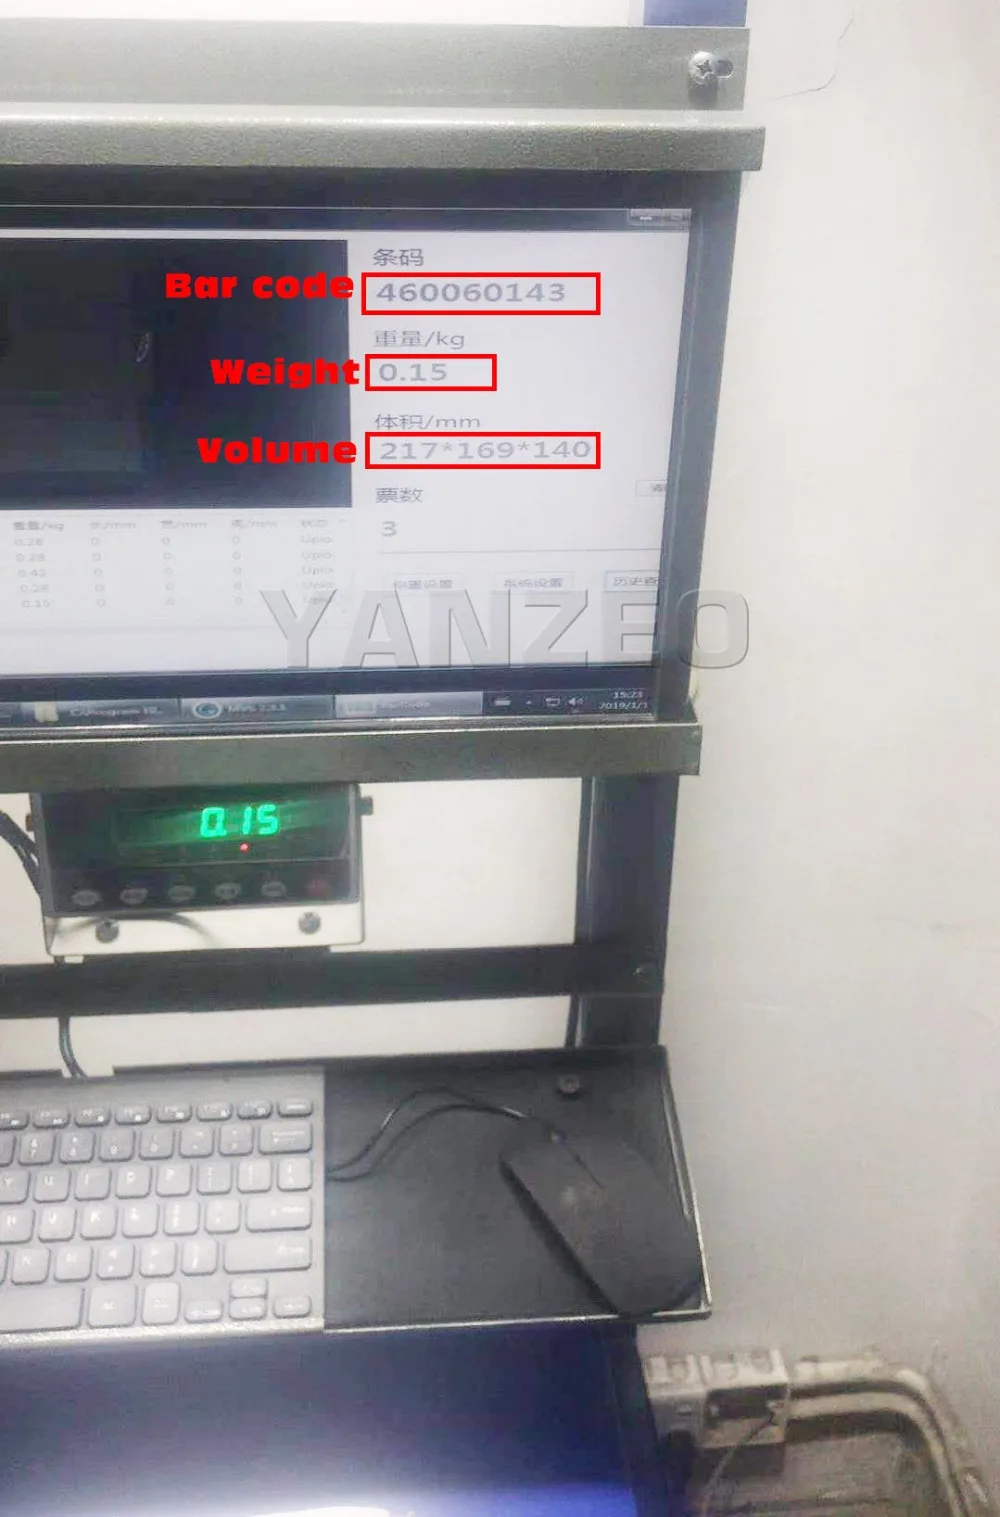 YANZEO S9000 логистики выразить объем Вес быстрое измерительный прибор товара сканер